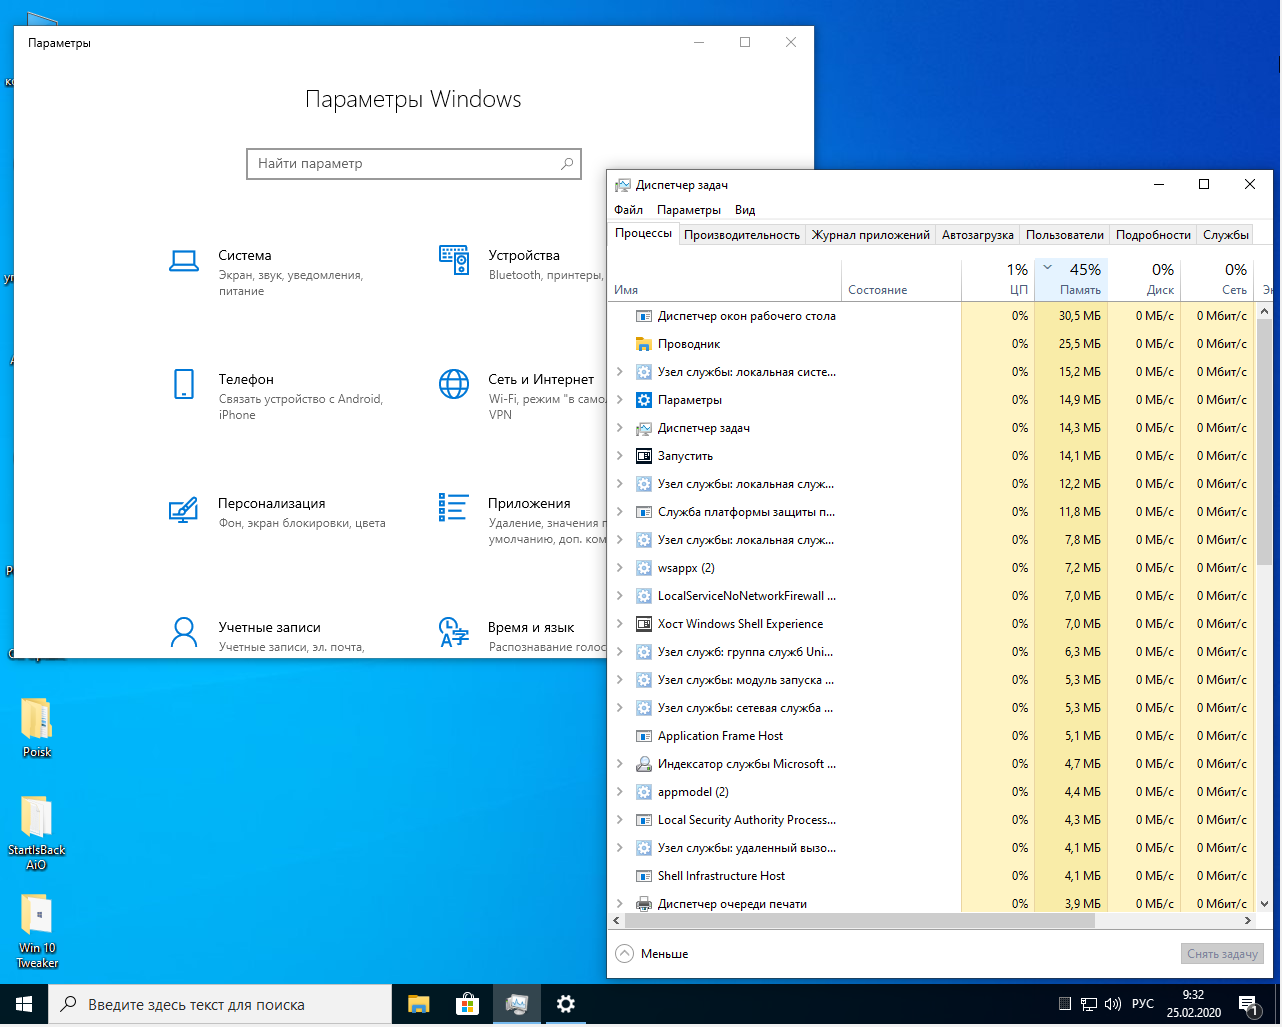 Сборки виндовс для слабых ноутбуков. Самая легкая Windows. Windows 10 сборка для слабых ПК. Лёгкая версия Windows 10 для слабых ноутбуков. Хорошие сборки для слабых пк